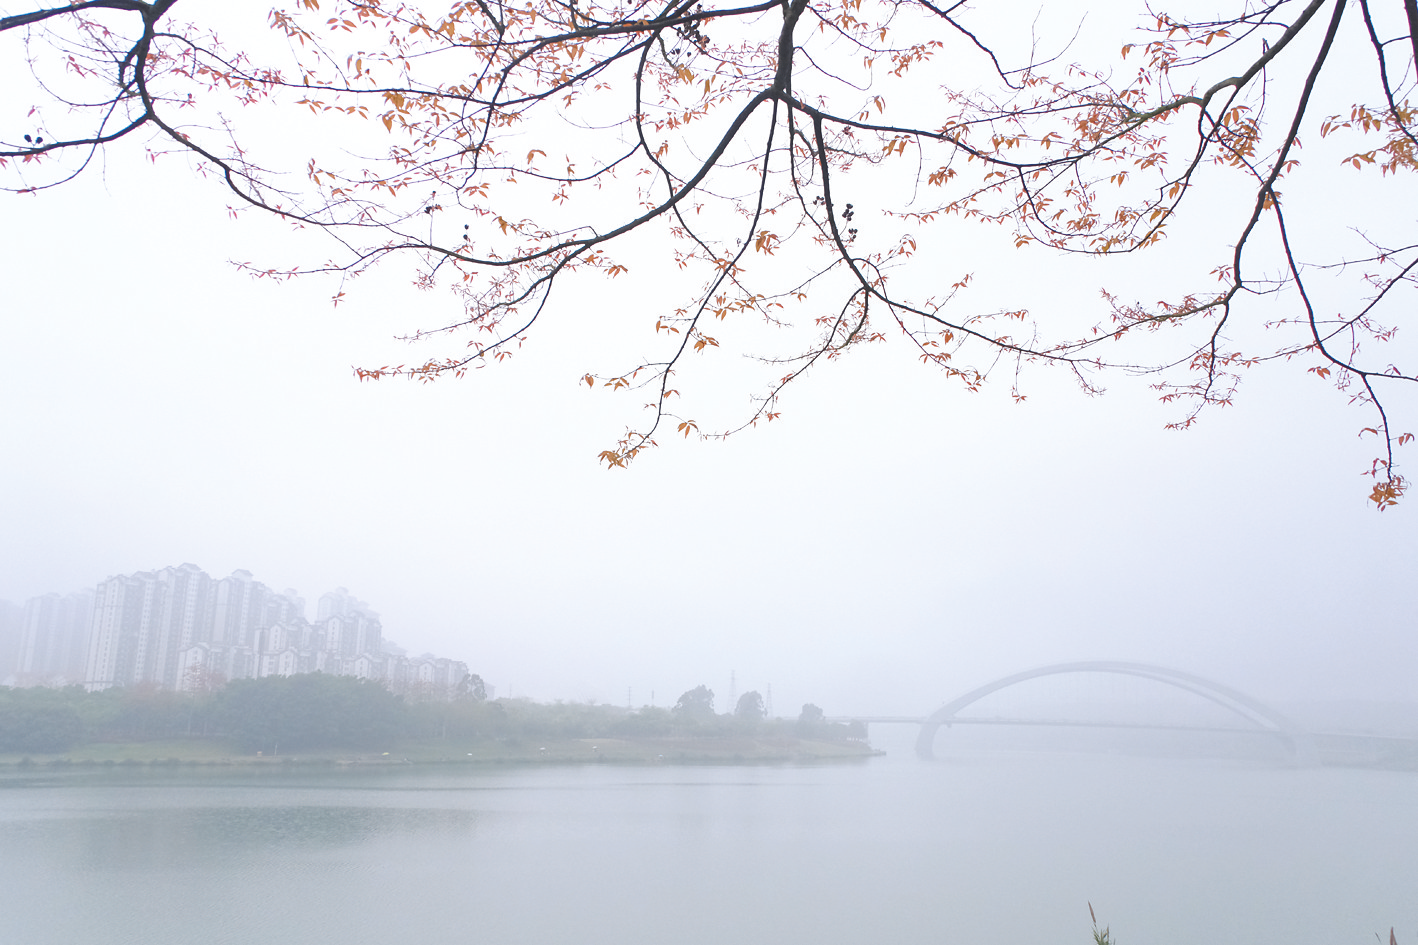     雨雾迷蒙，邕江、大桥、树、高楼构成一幅水墨画    本报记者宋延康 摄